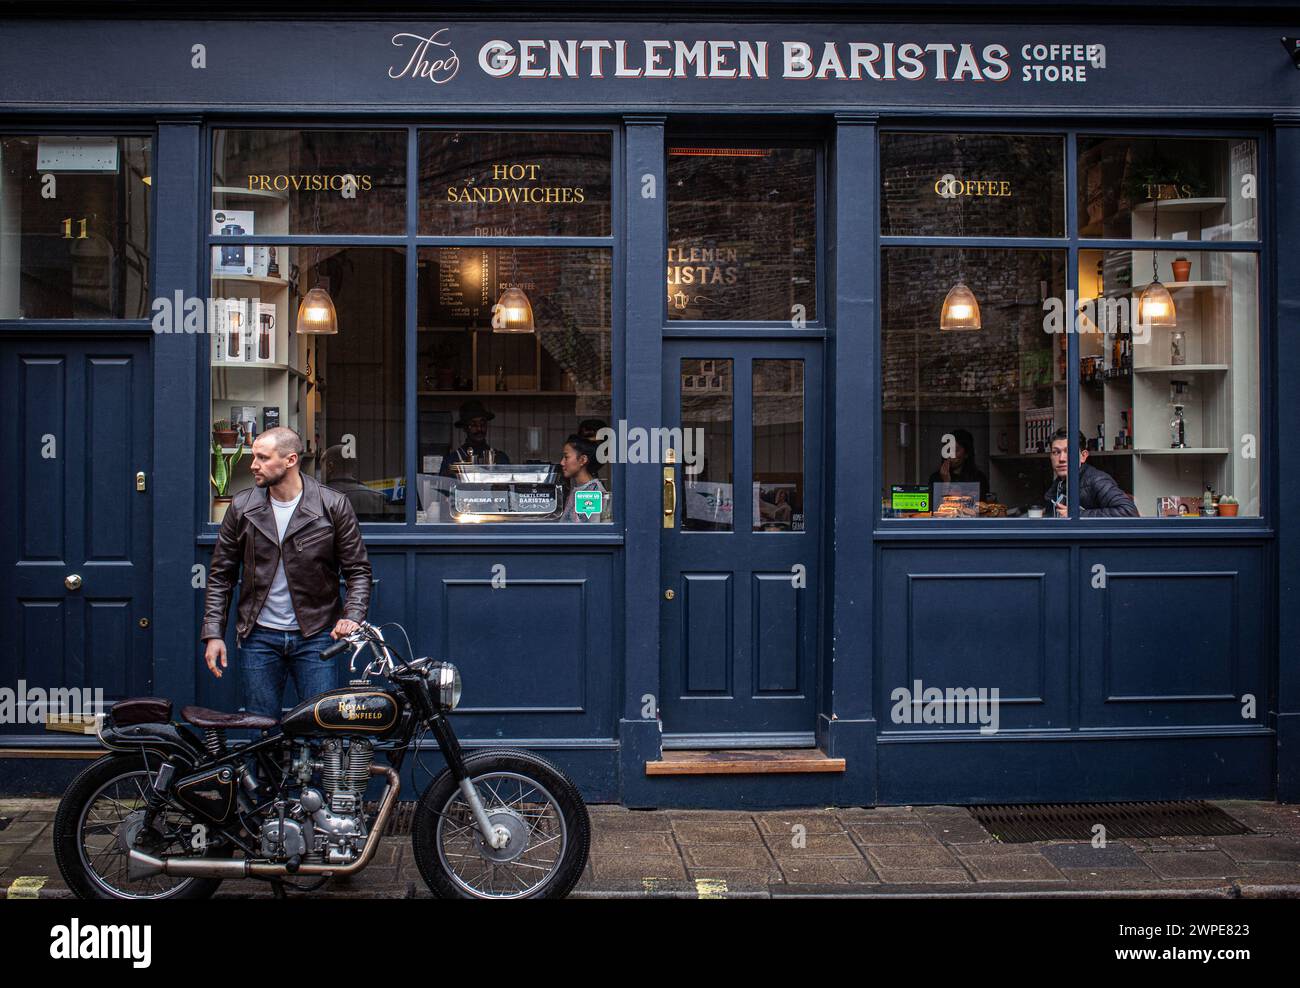 Jeune homme en port de veste en cuir prend une pause café dans un café à Londres avec une moto classique garée devant un café Banque D'Images